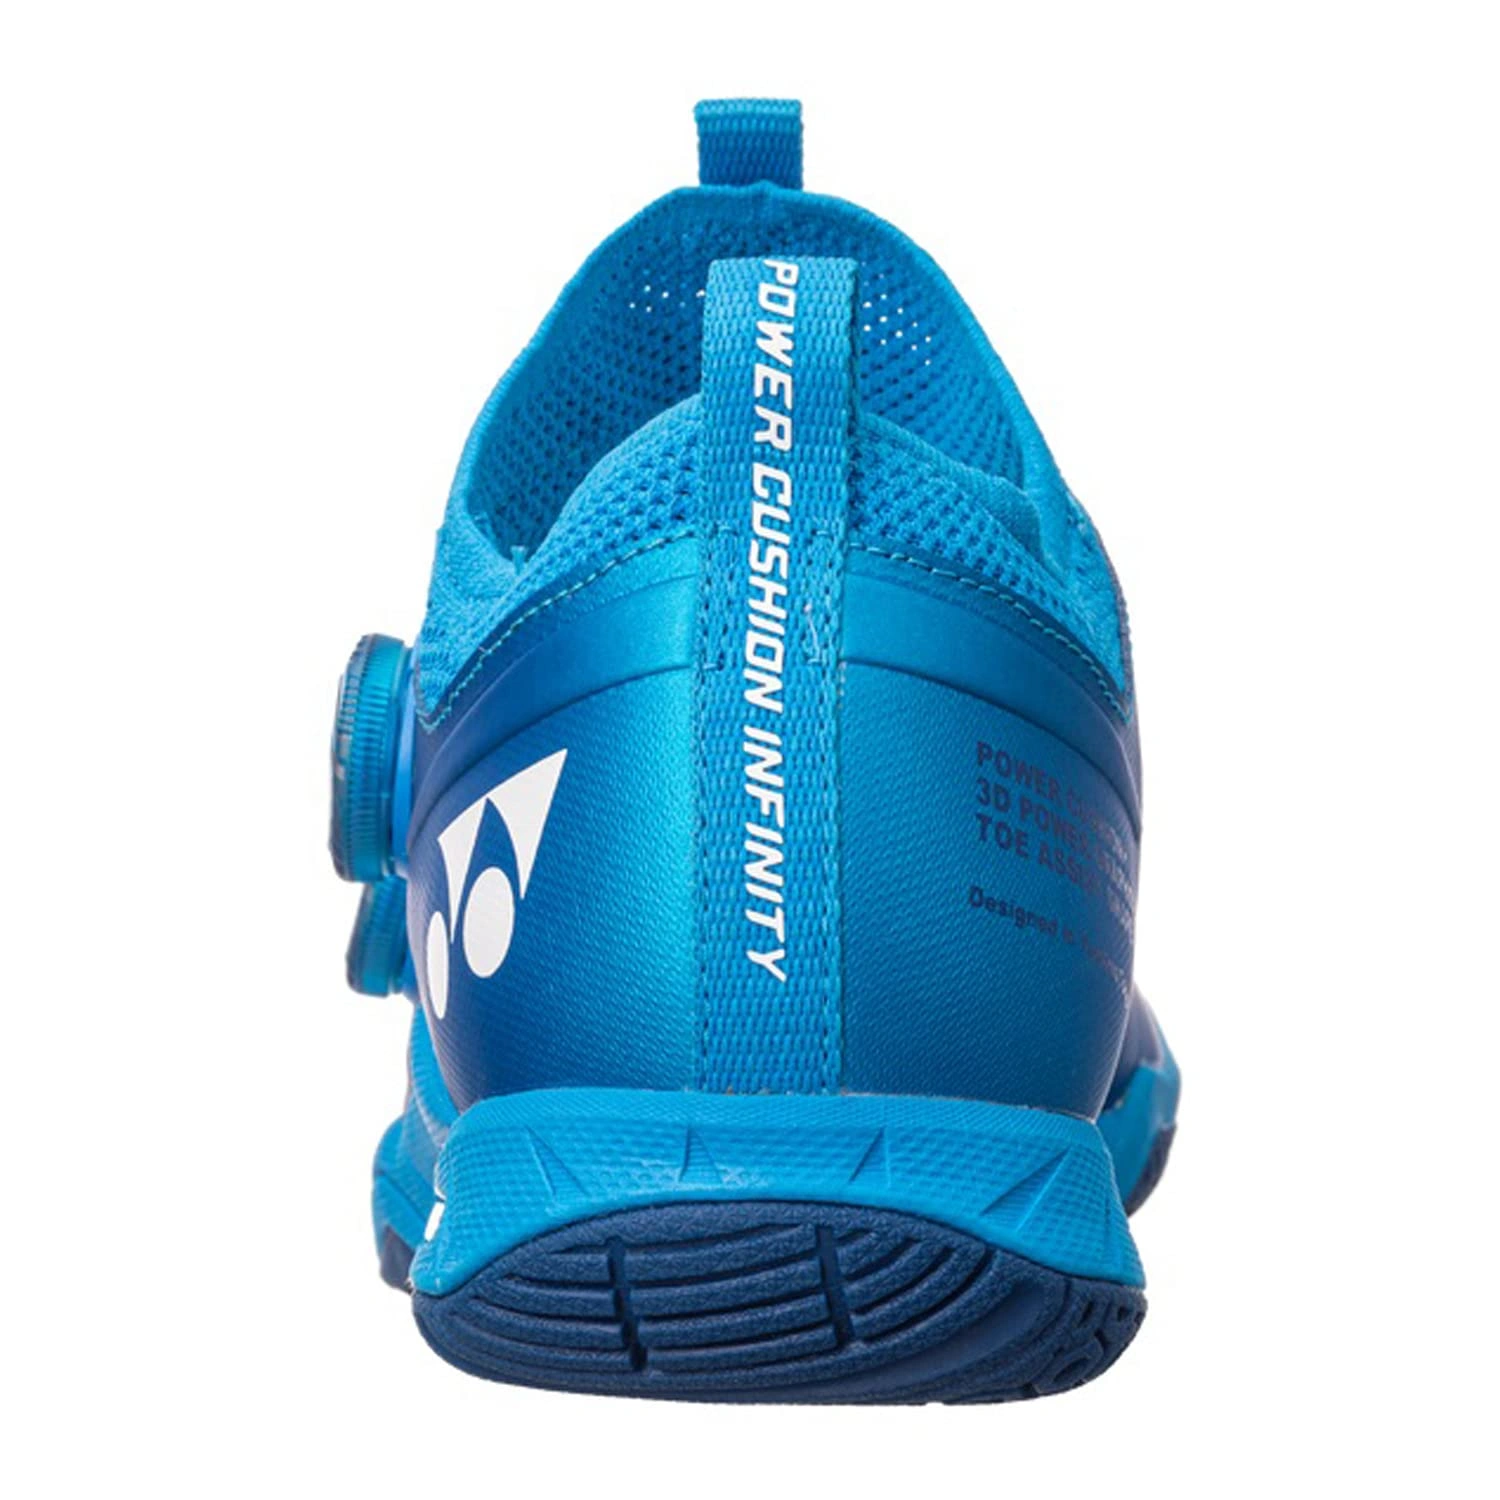 YONEX SHB Infinity 2 EX Power Cushion Badminton Shoes-9-METALIC BLUE-4